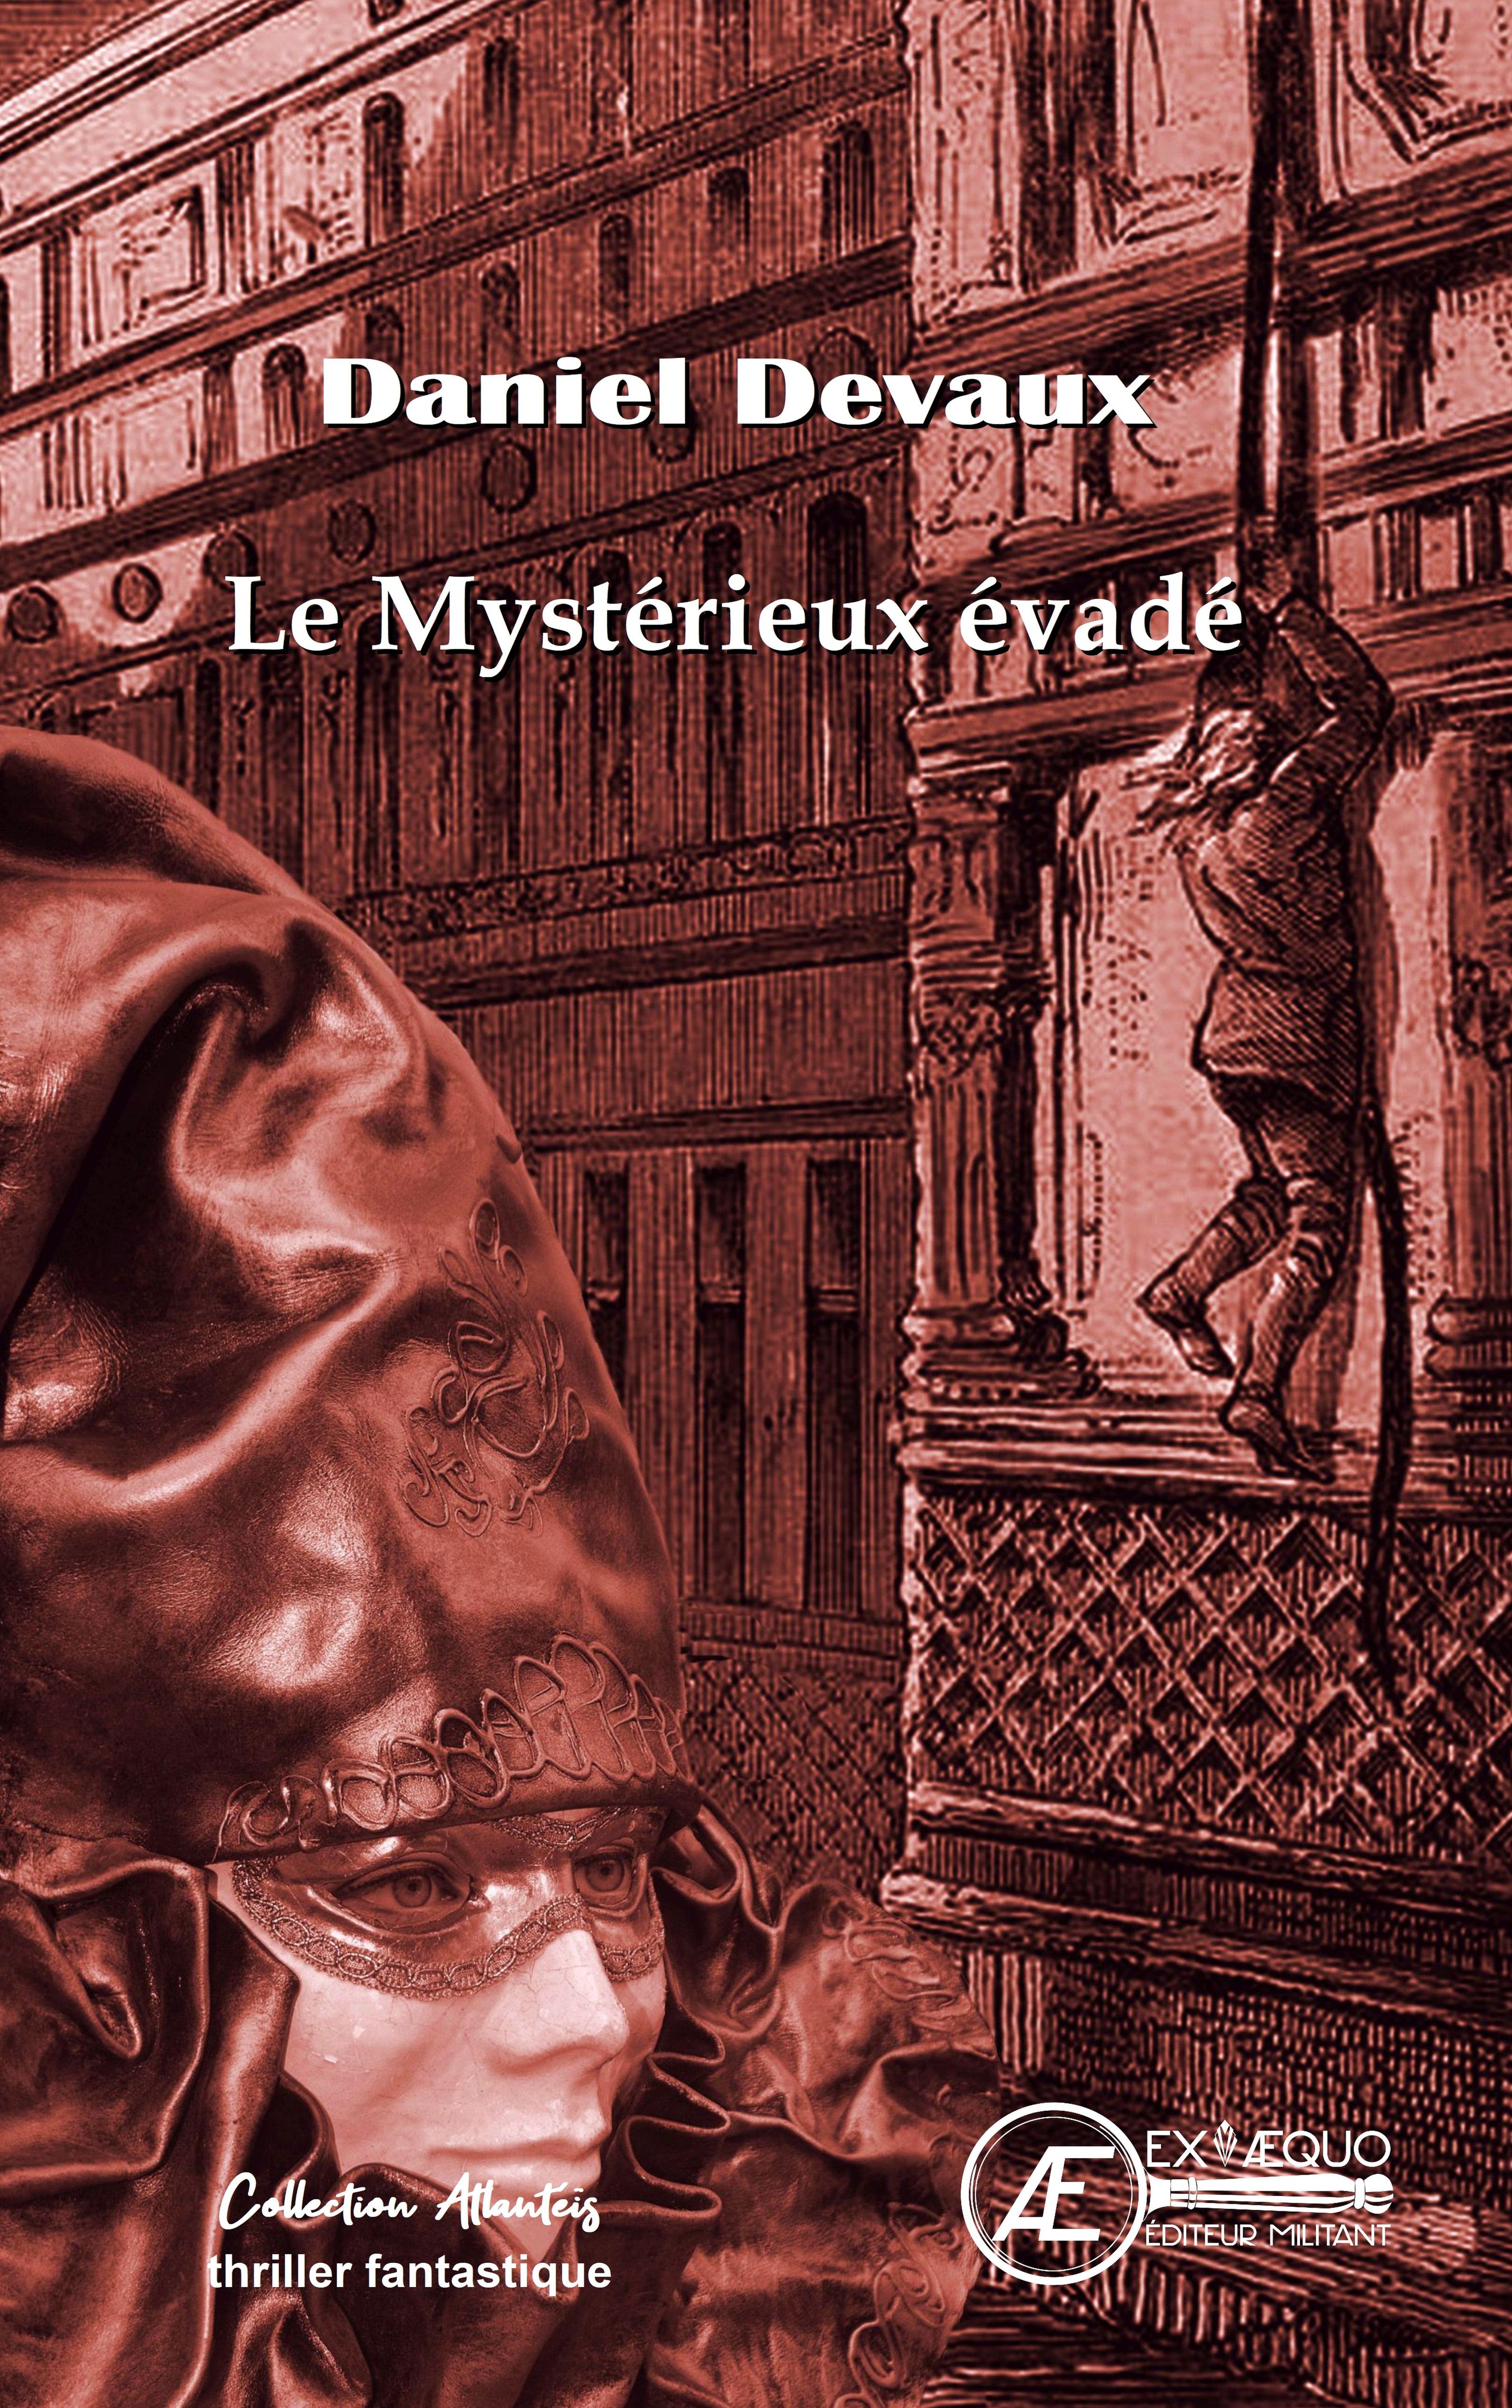 You are currently viewing Le mystérieux évadé, de Daniel Devaux